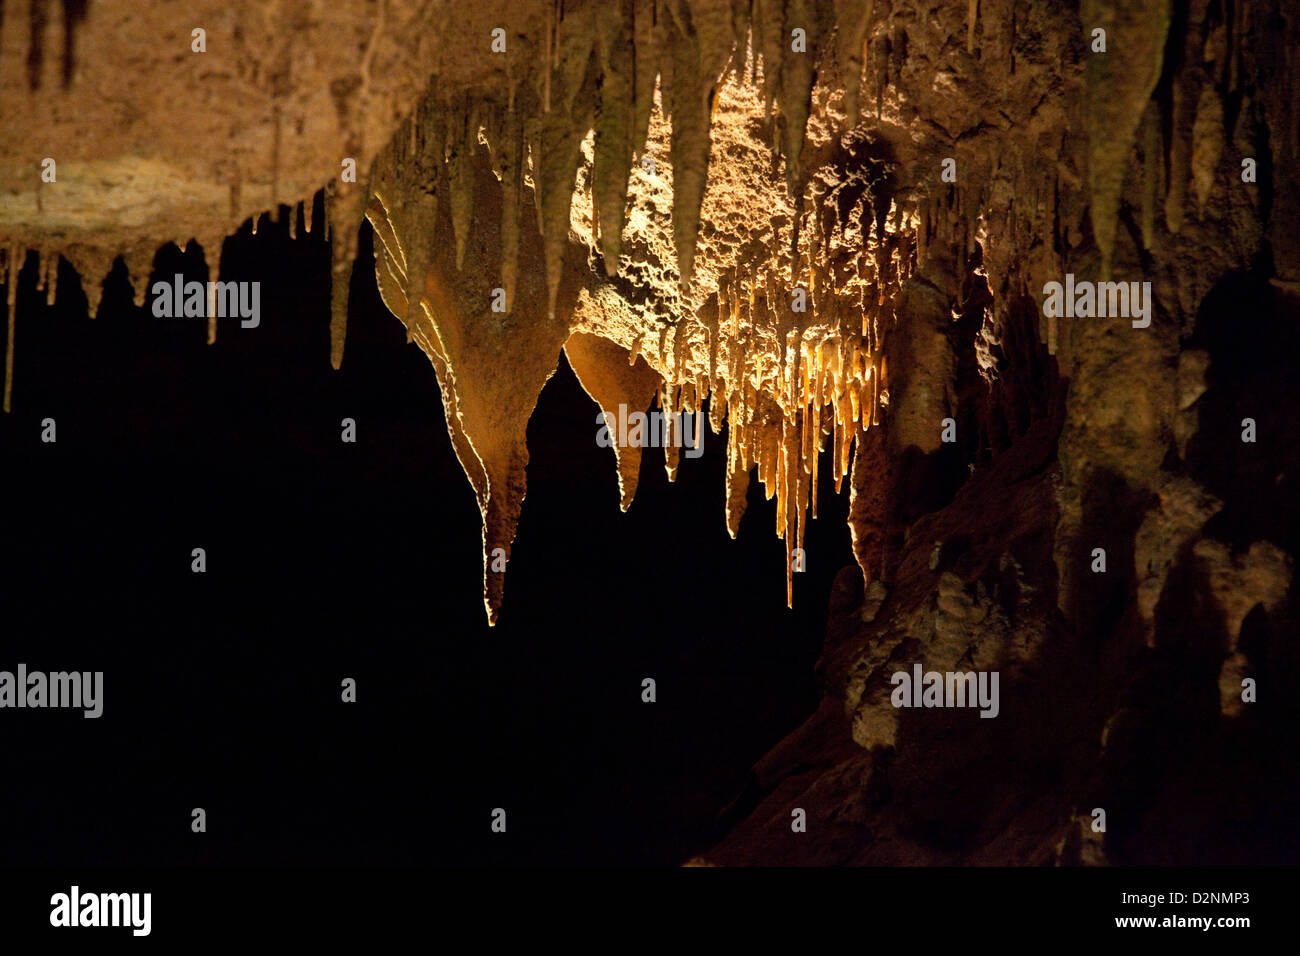 De cavernas subterráneas con estalactitas y estalagmitas, desapareciendo en la oscuridad. En virtud de las Grandes Montañas Humeantes (Great Smoky Mountains de Tennessee Foto de stock